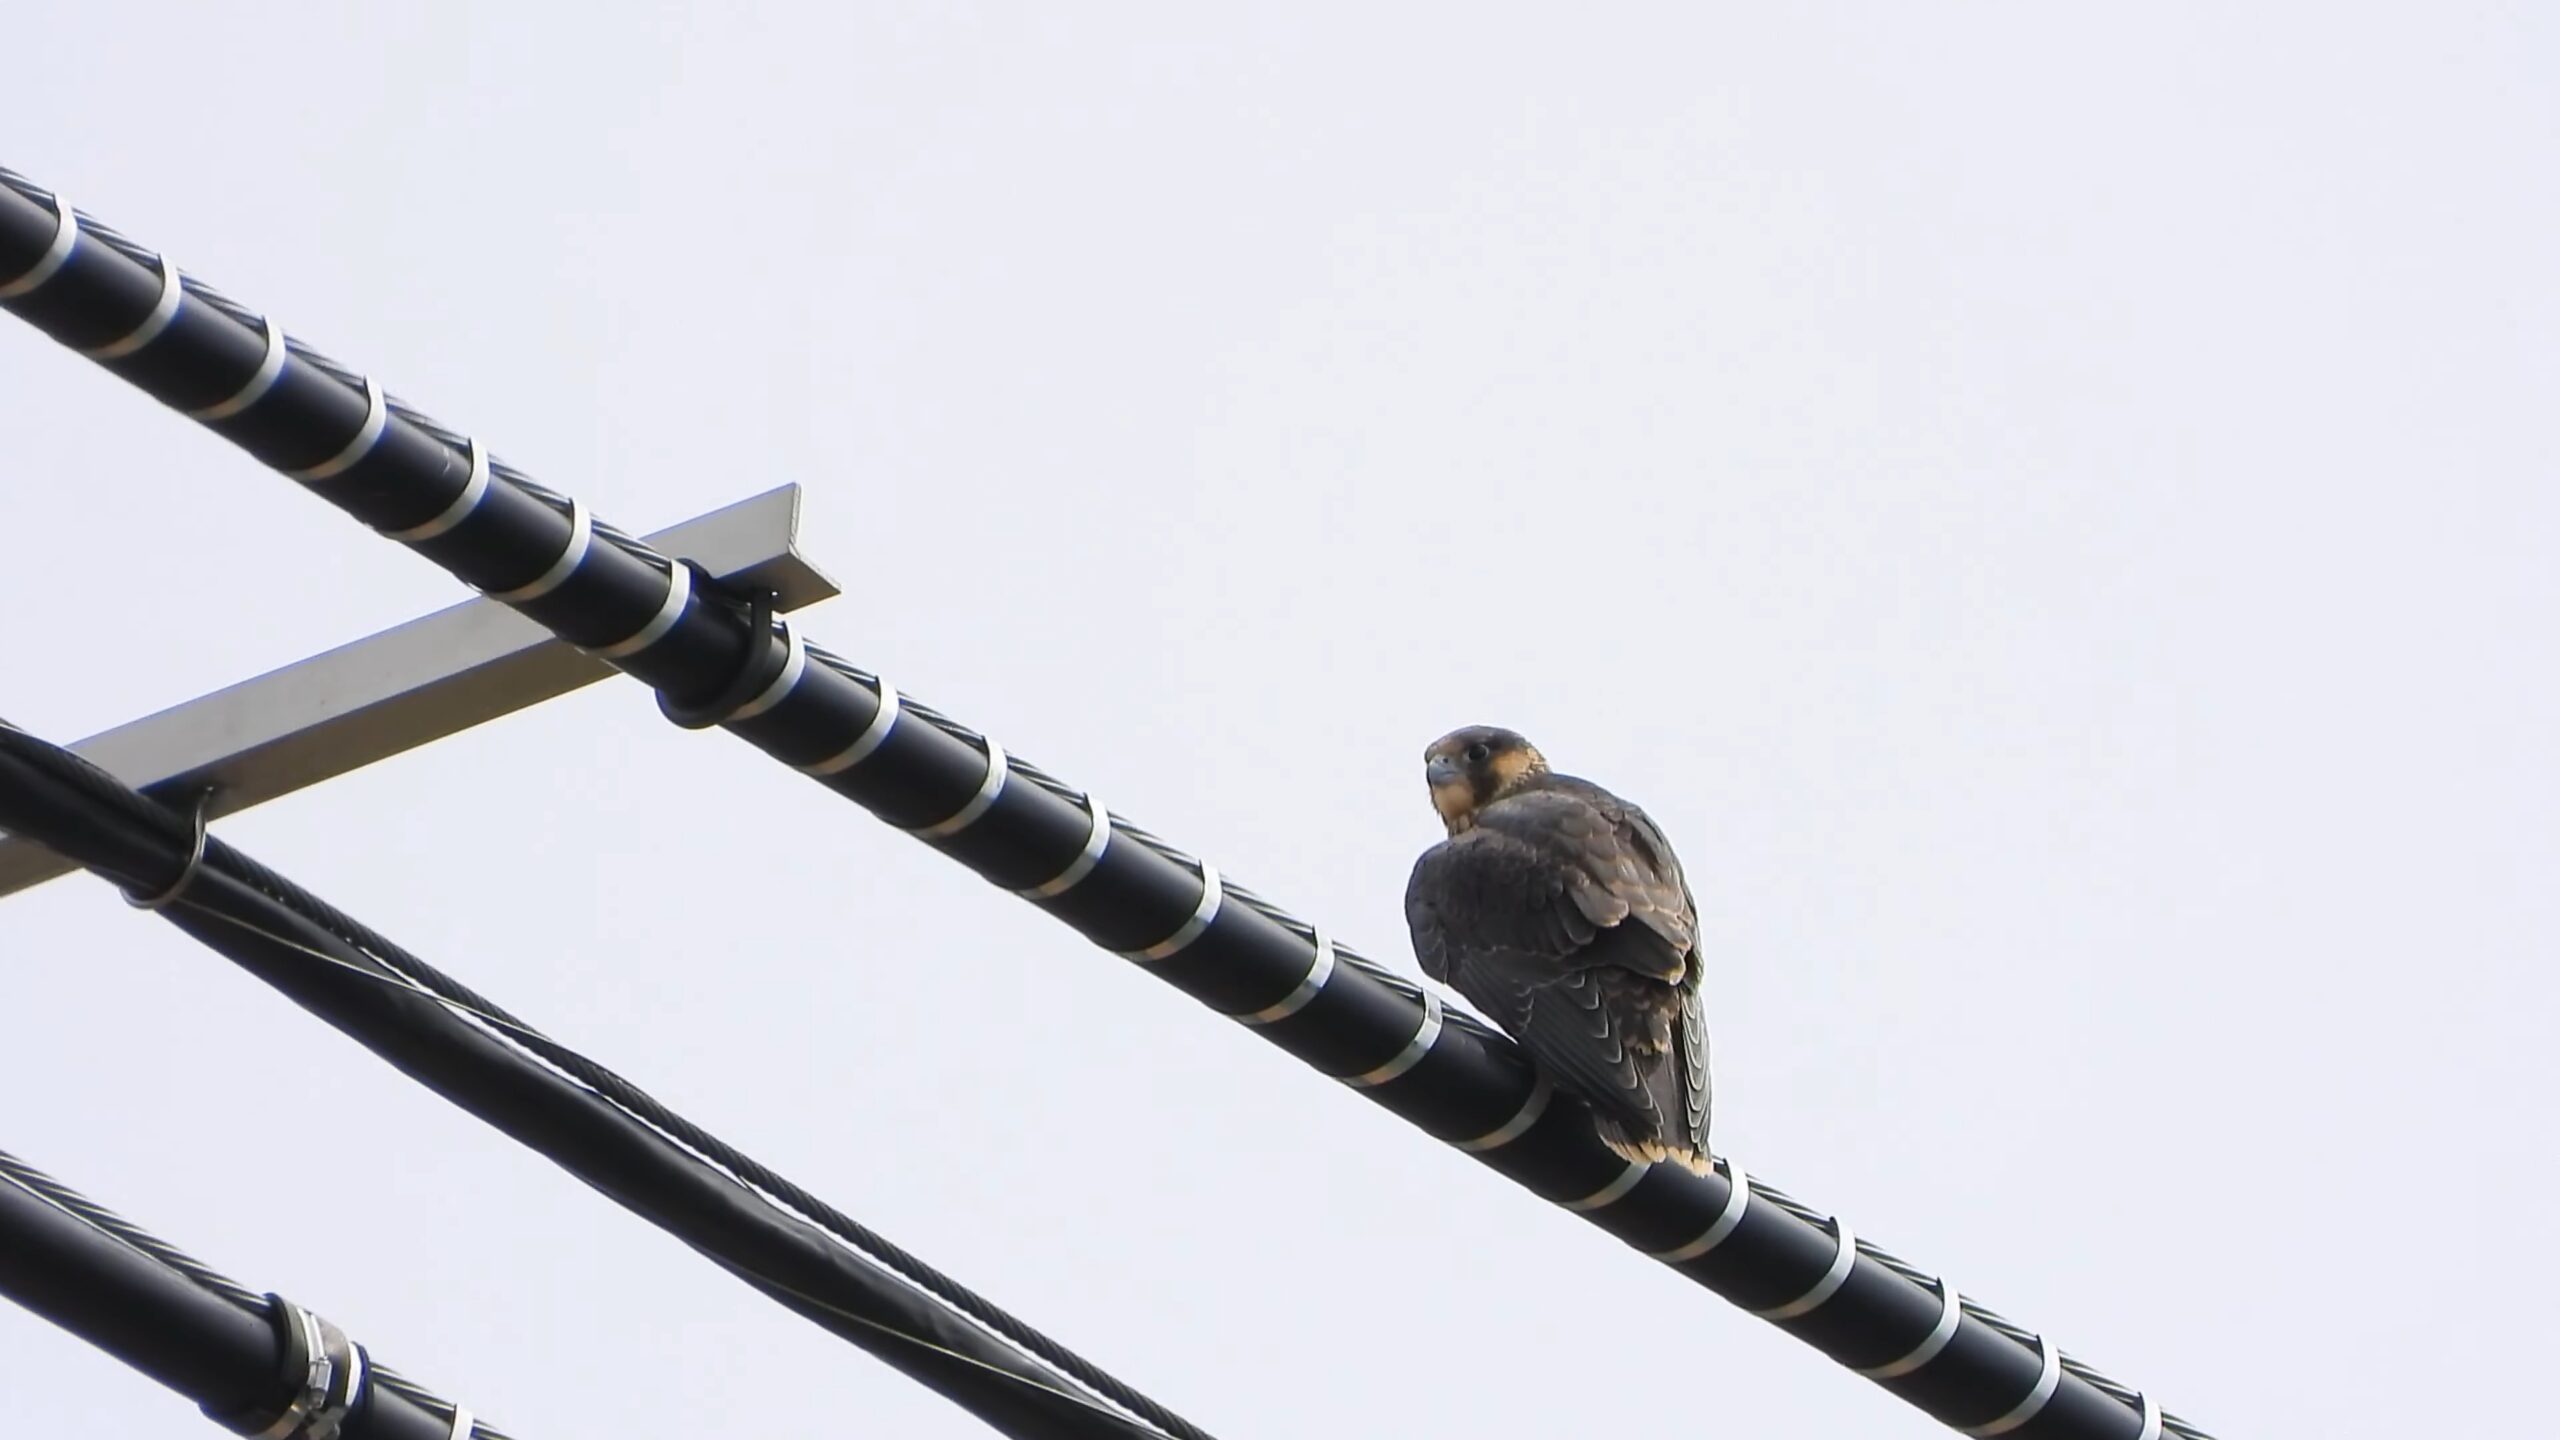 Brooklyn Bridge peregrine falcons